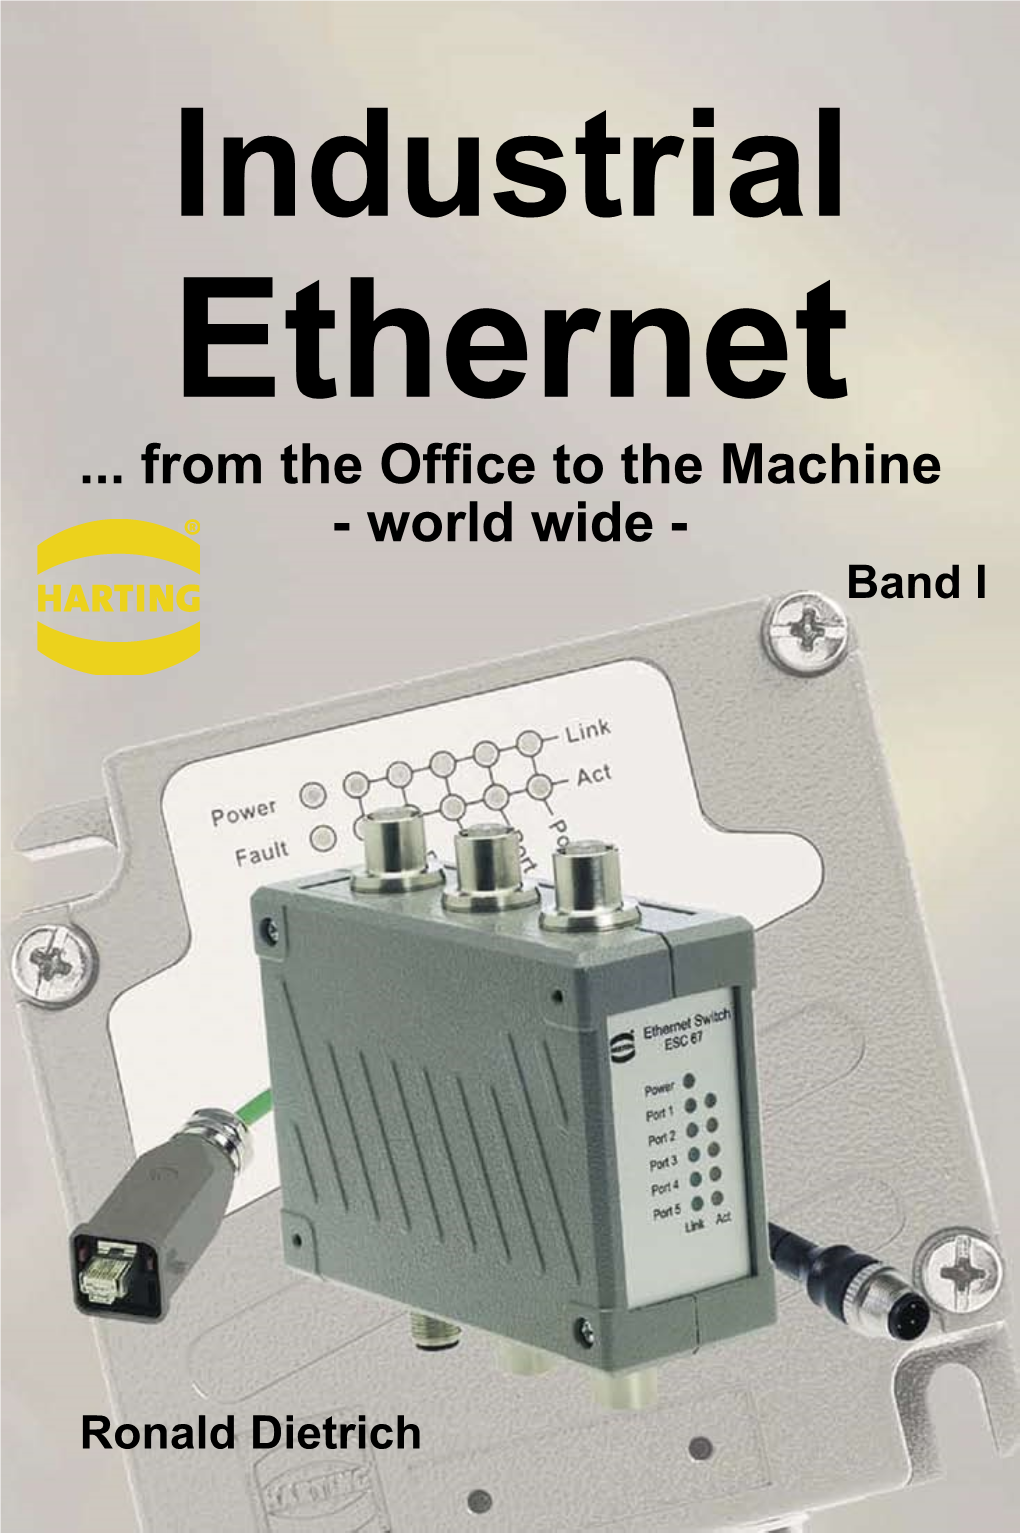 Industrial Ethernet